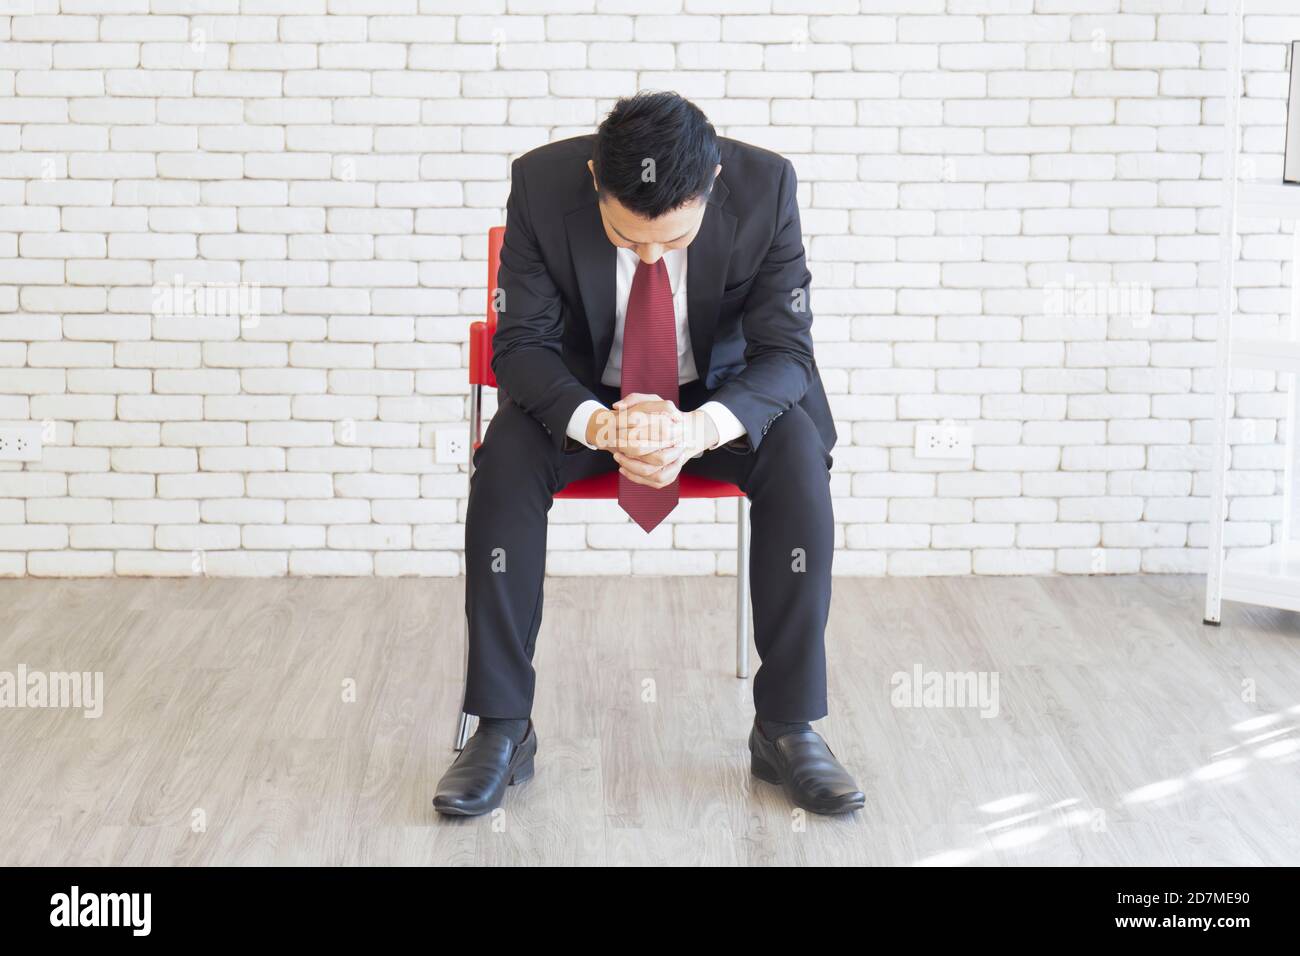 Un homme asiatique portant un costume, assis, les mains calment votre esprit sur la chaise Banque D'Images